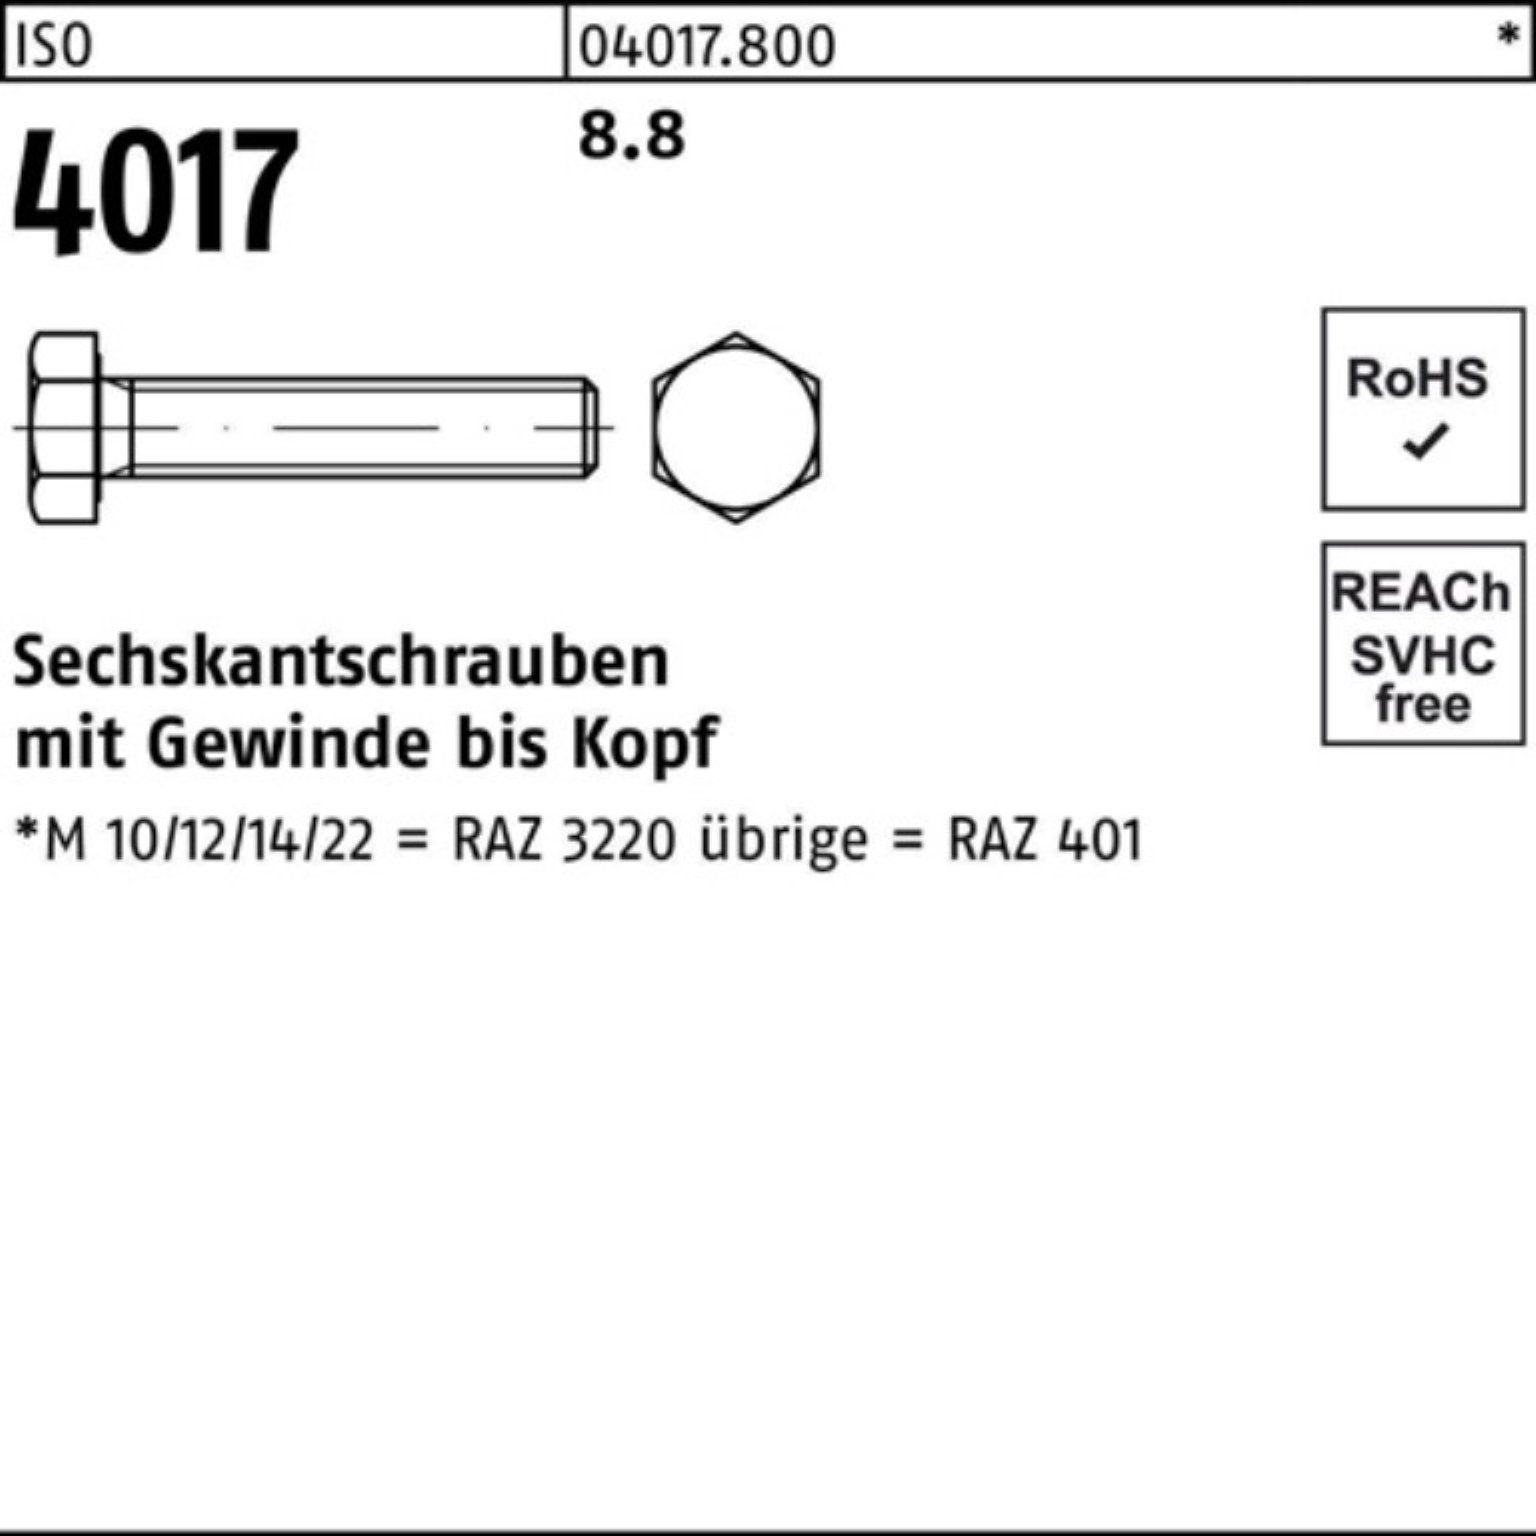 4017 40 VG Bufab ISO 170 8.8 Sechskantschraube 100er Pack ISO 100 Stück Sechskantschraube M8x